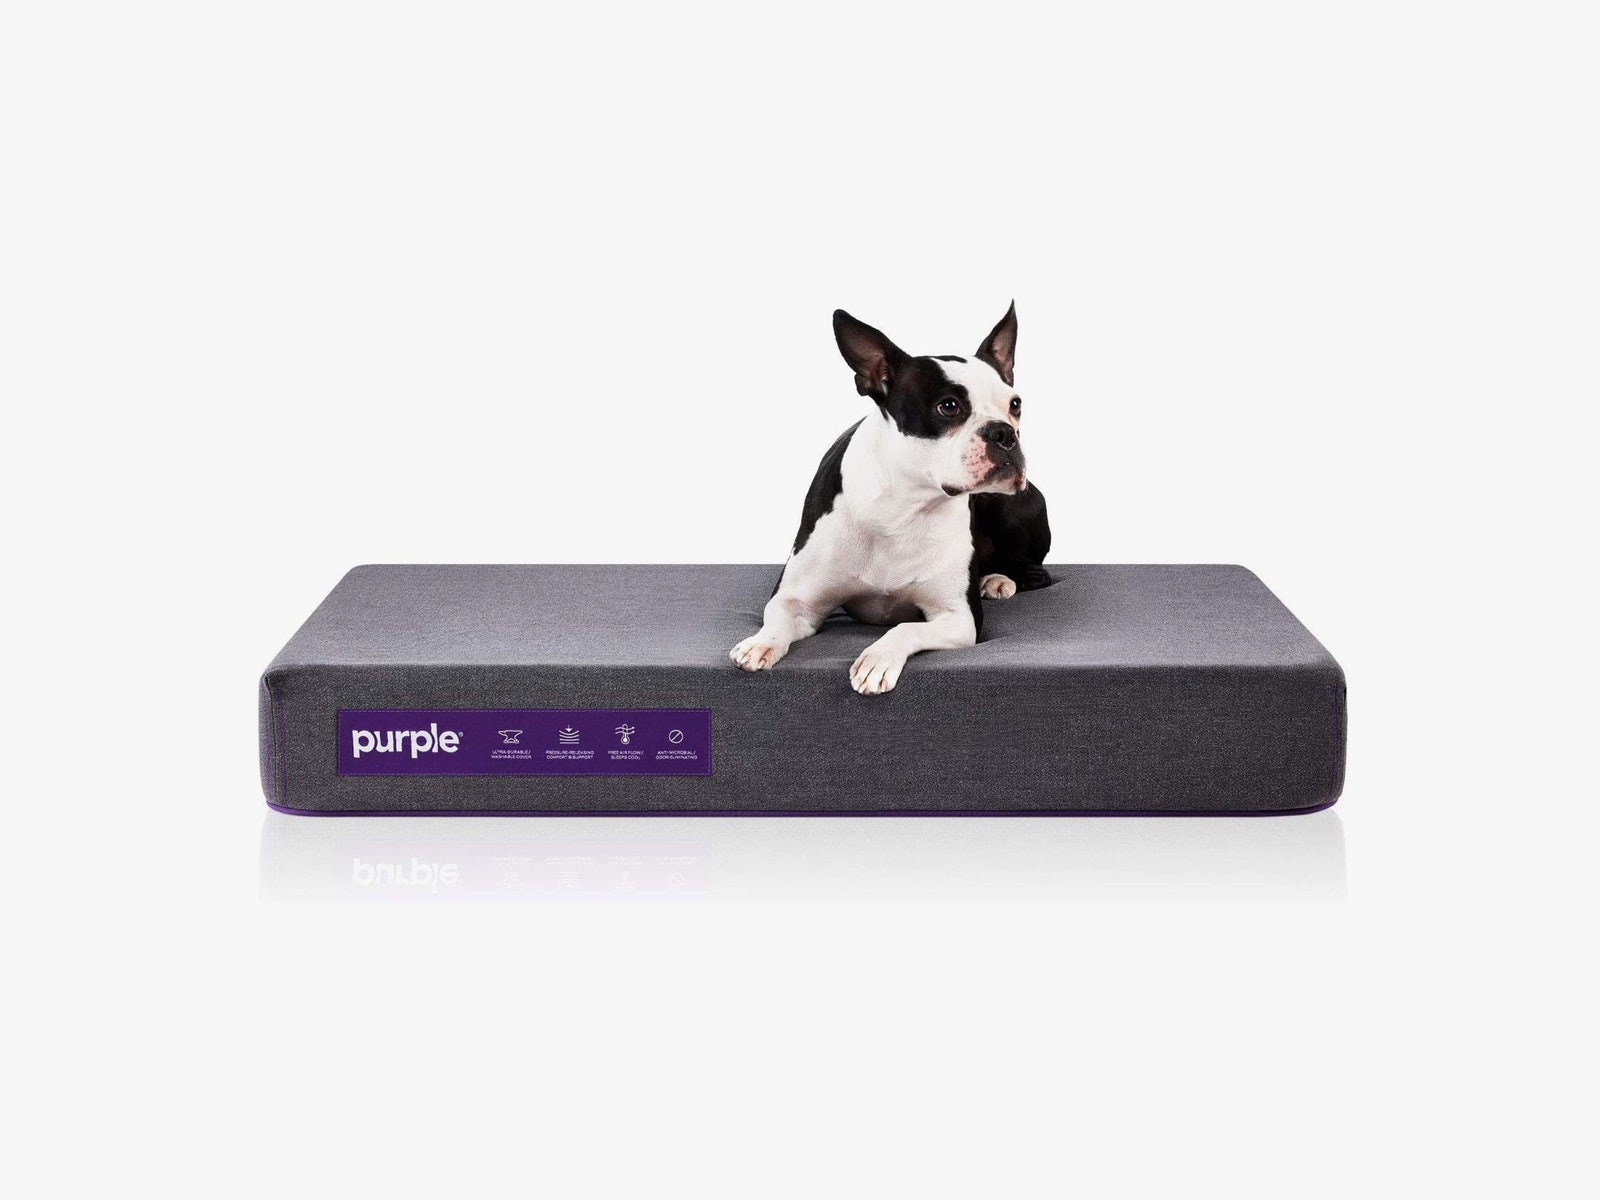 Dog sitting on Purple dog bed